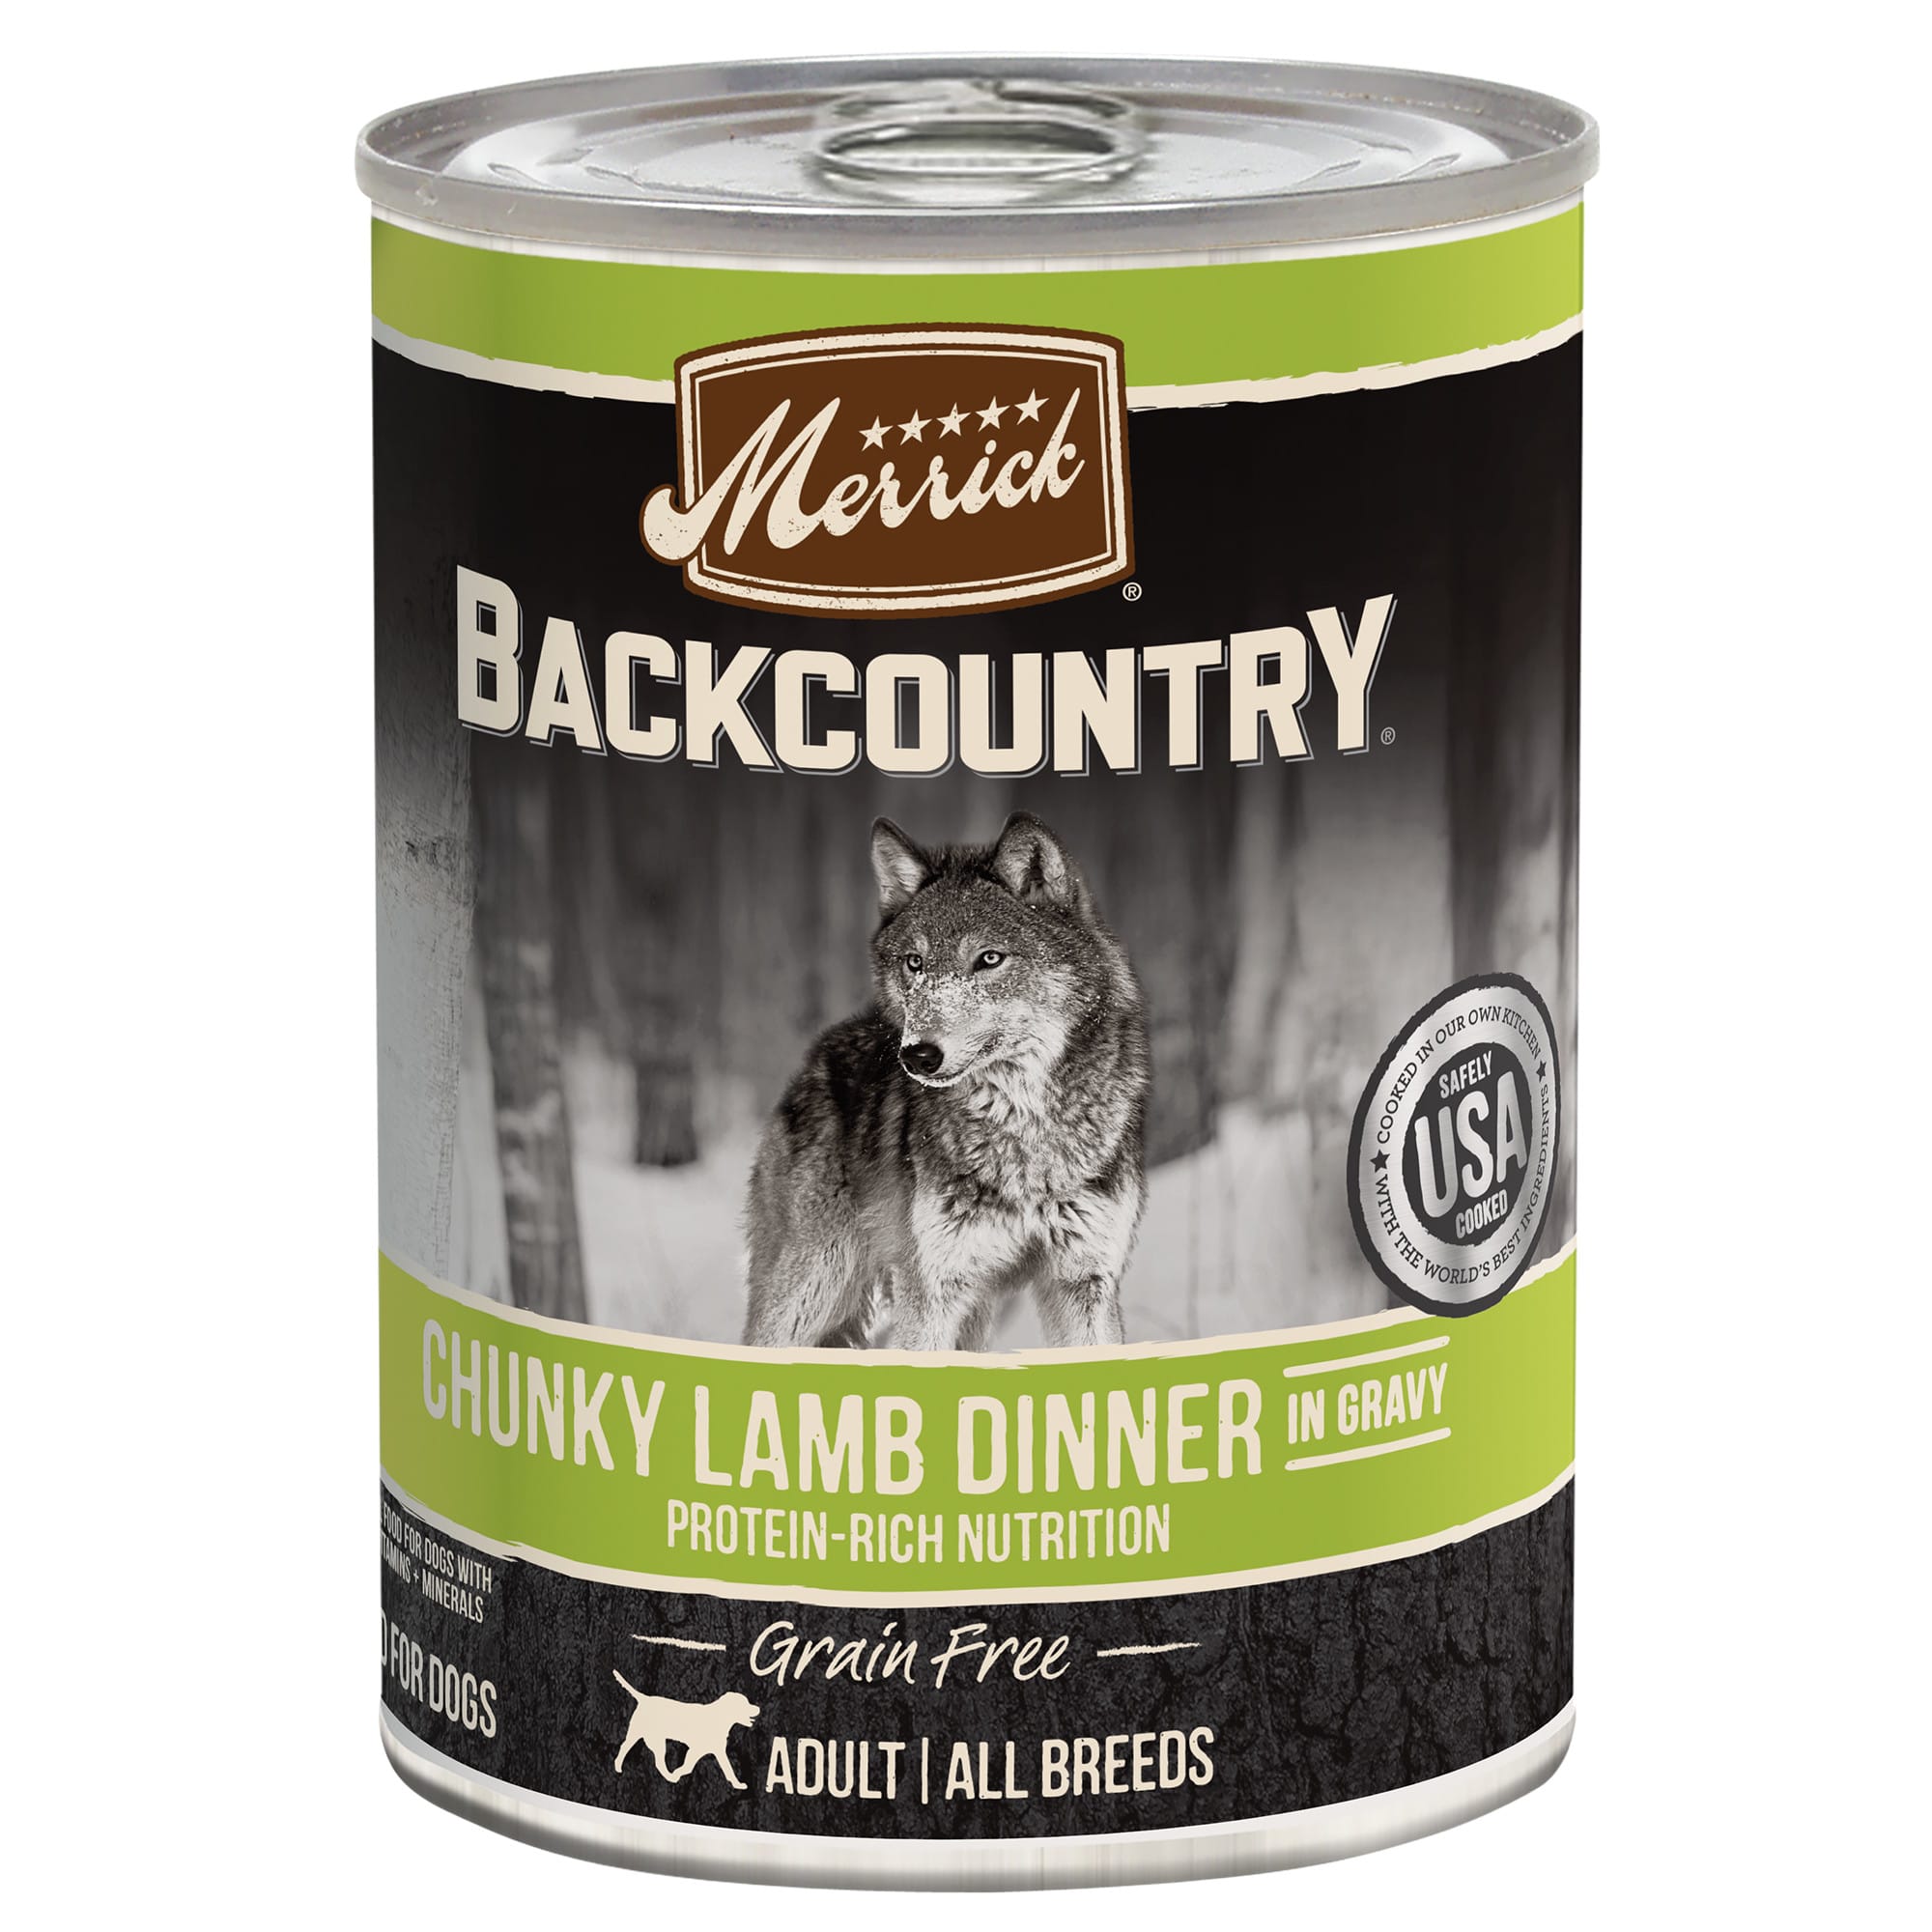 Merrick Backcountry Grain Free Chunky Lamb Dinner in Gravy